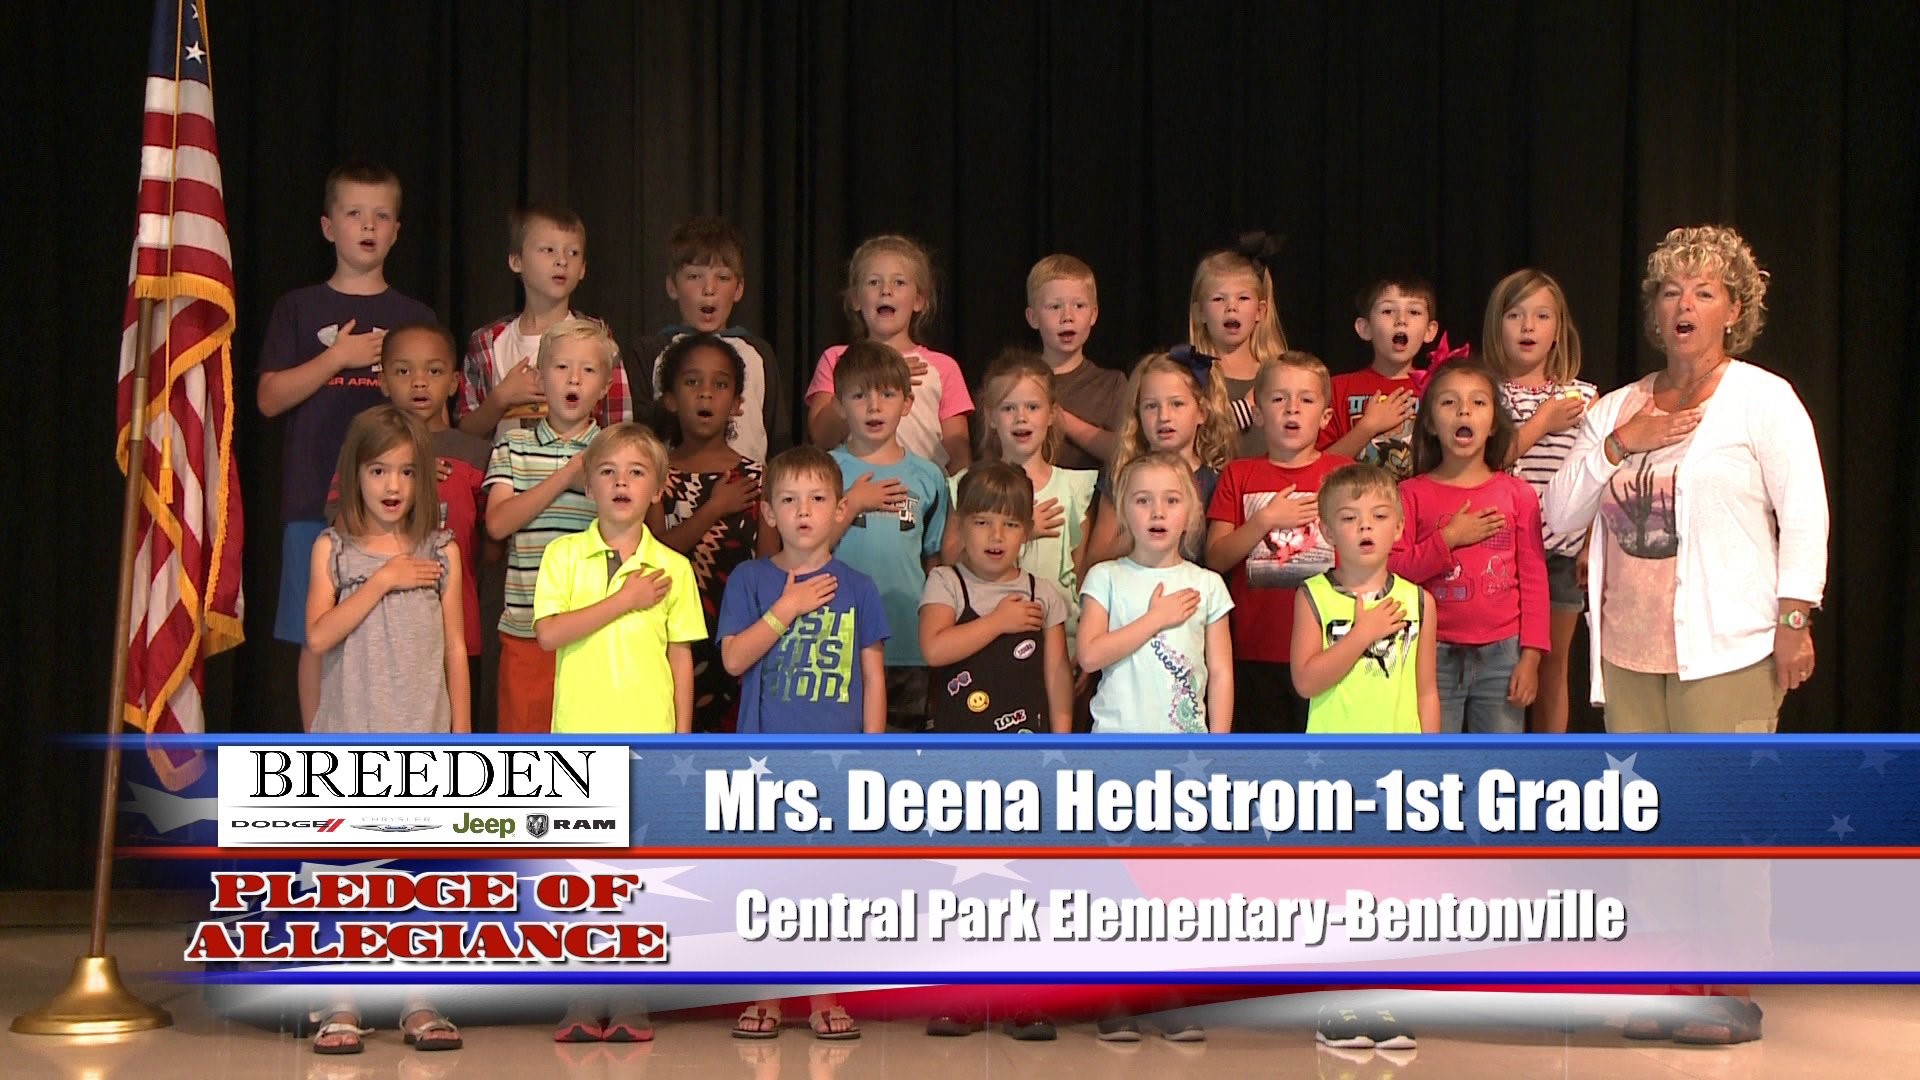 Mrs. Deena Dedstrom  1st Grade  Central Park Elementary - Bentonville